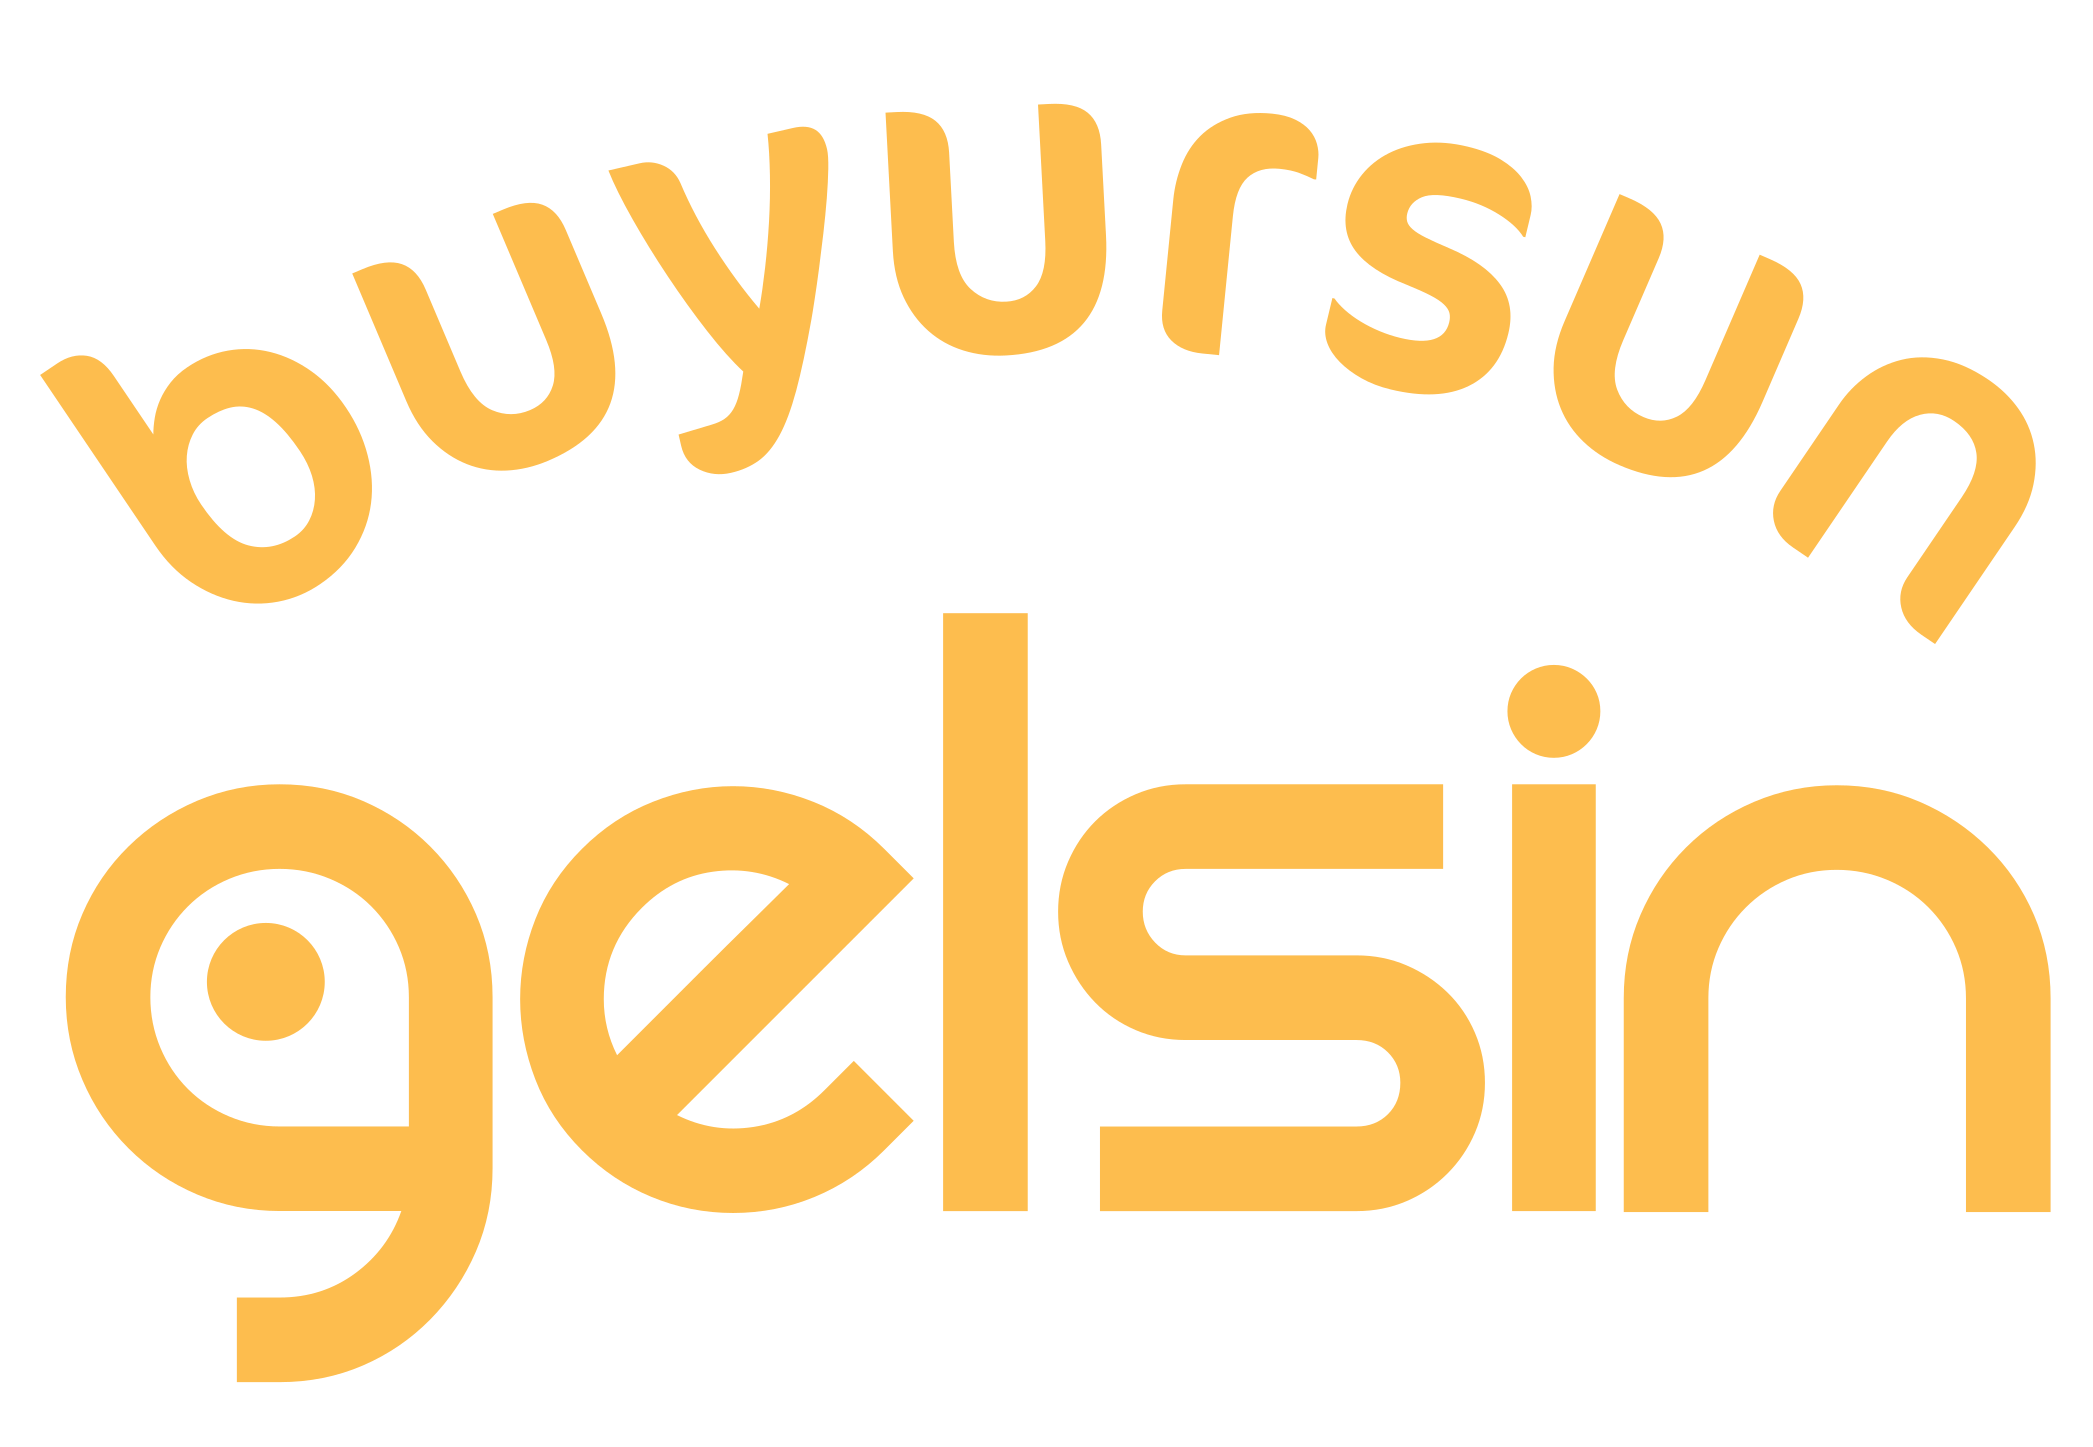 Buyursun Gelsin Logo